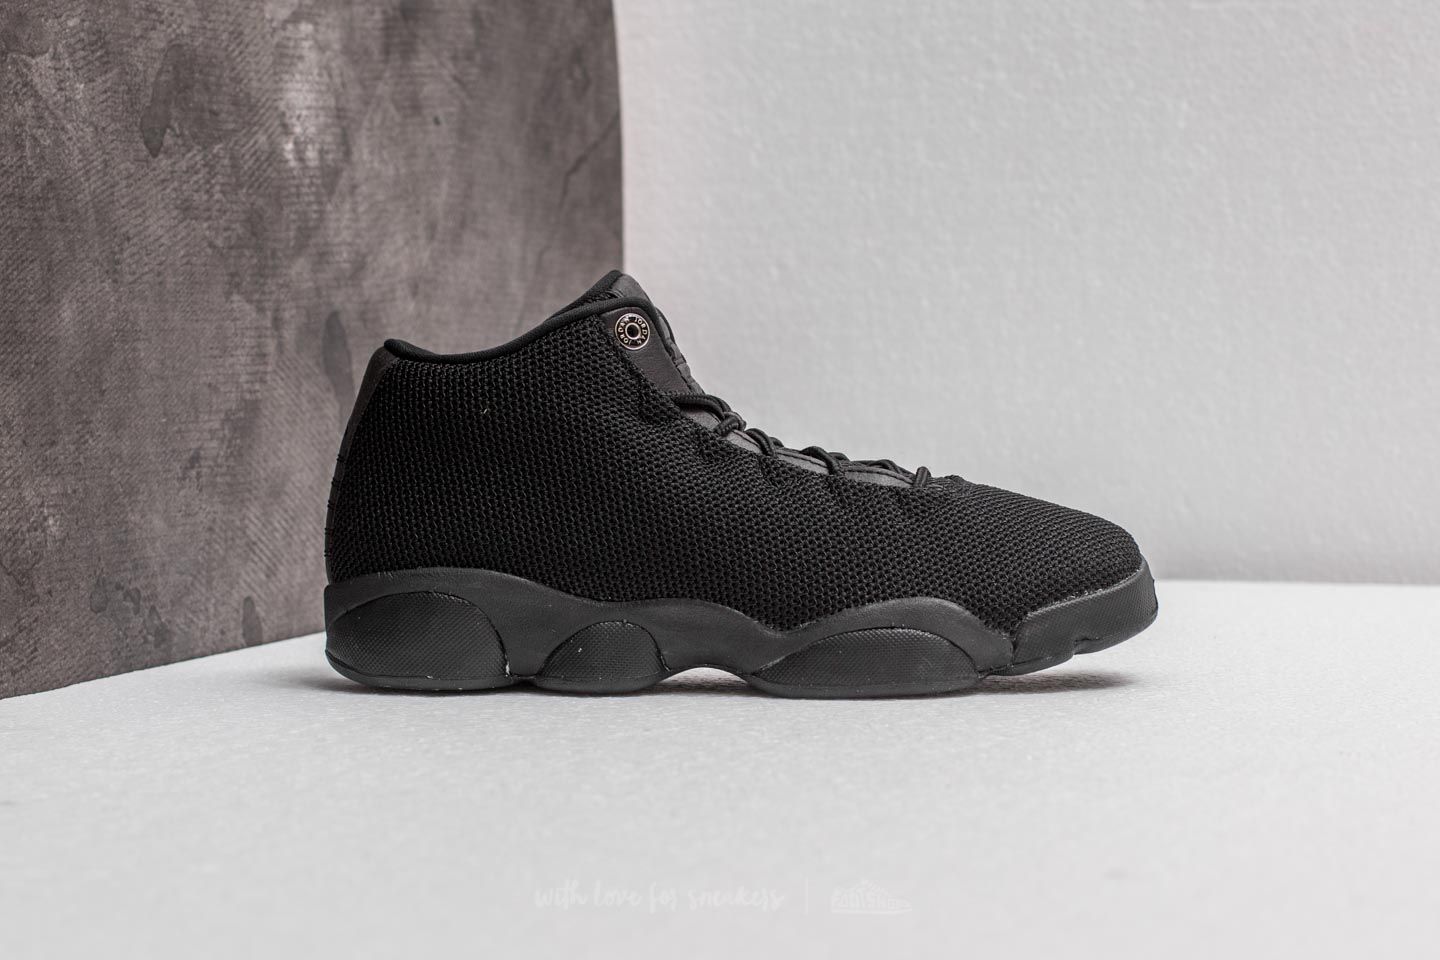 Chaussures et baskets femme Jordan Horizon Low BG Black/ Black | Footshop